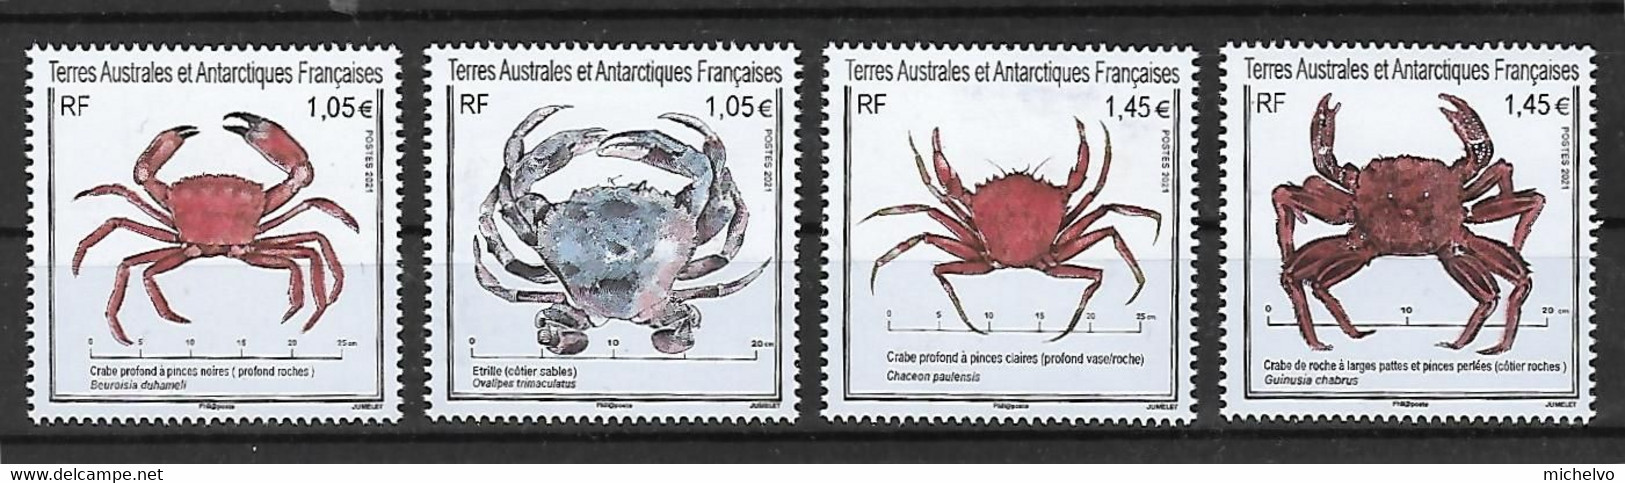 TAAF 2021 - Yv N° 965 à 968 **  - Crabes Et étrille (du Bloc - Si Seul Les Timbres Vous Intéresse) - Unused Stamps